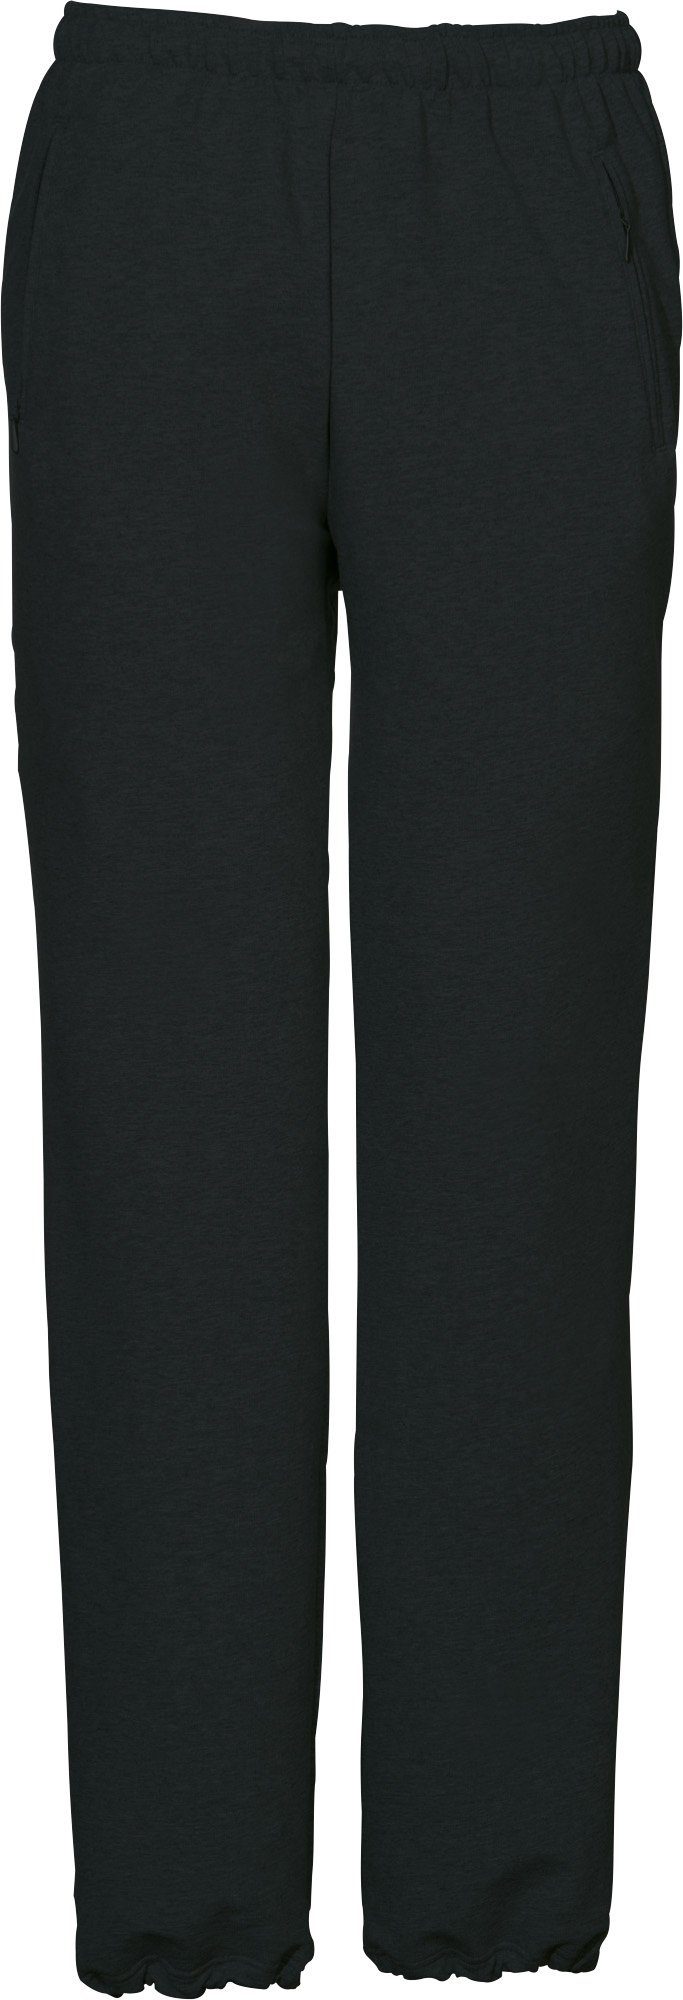 SCHNEIDER Sportswear Jogginghose Herren-Freizeithose "HORGENM", schwarz Uni lang